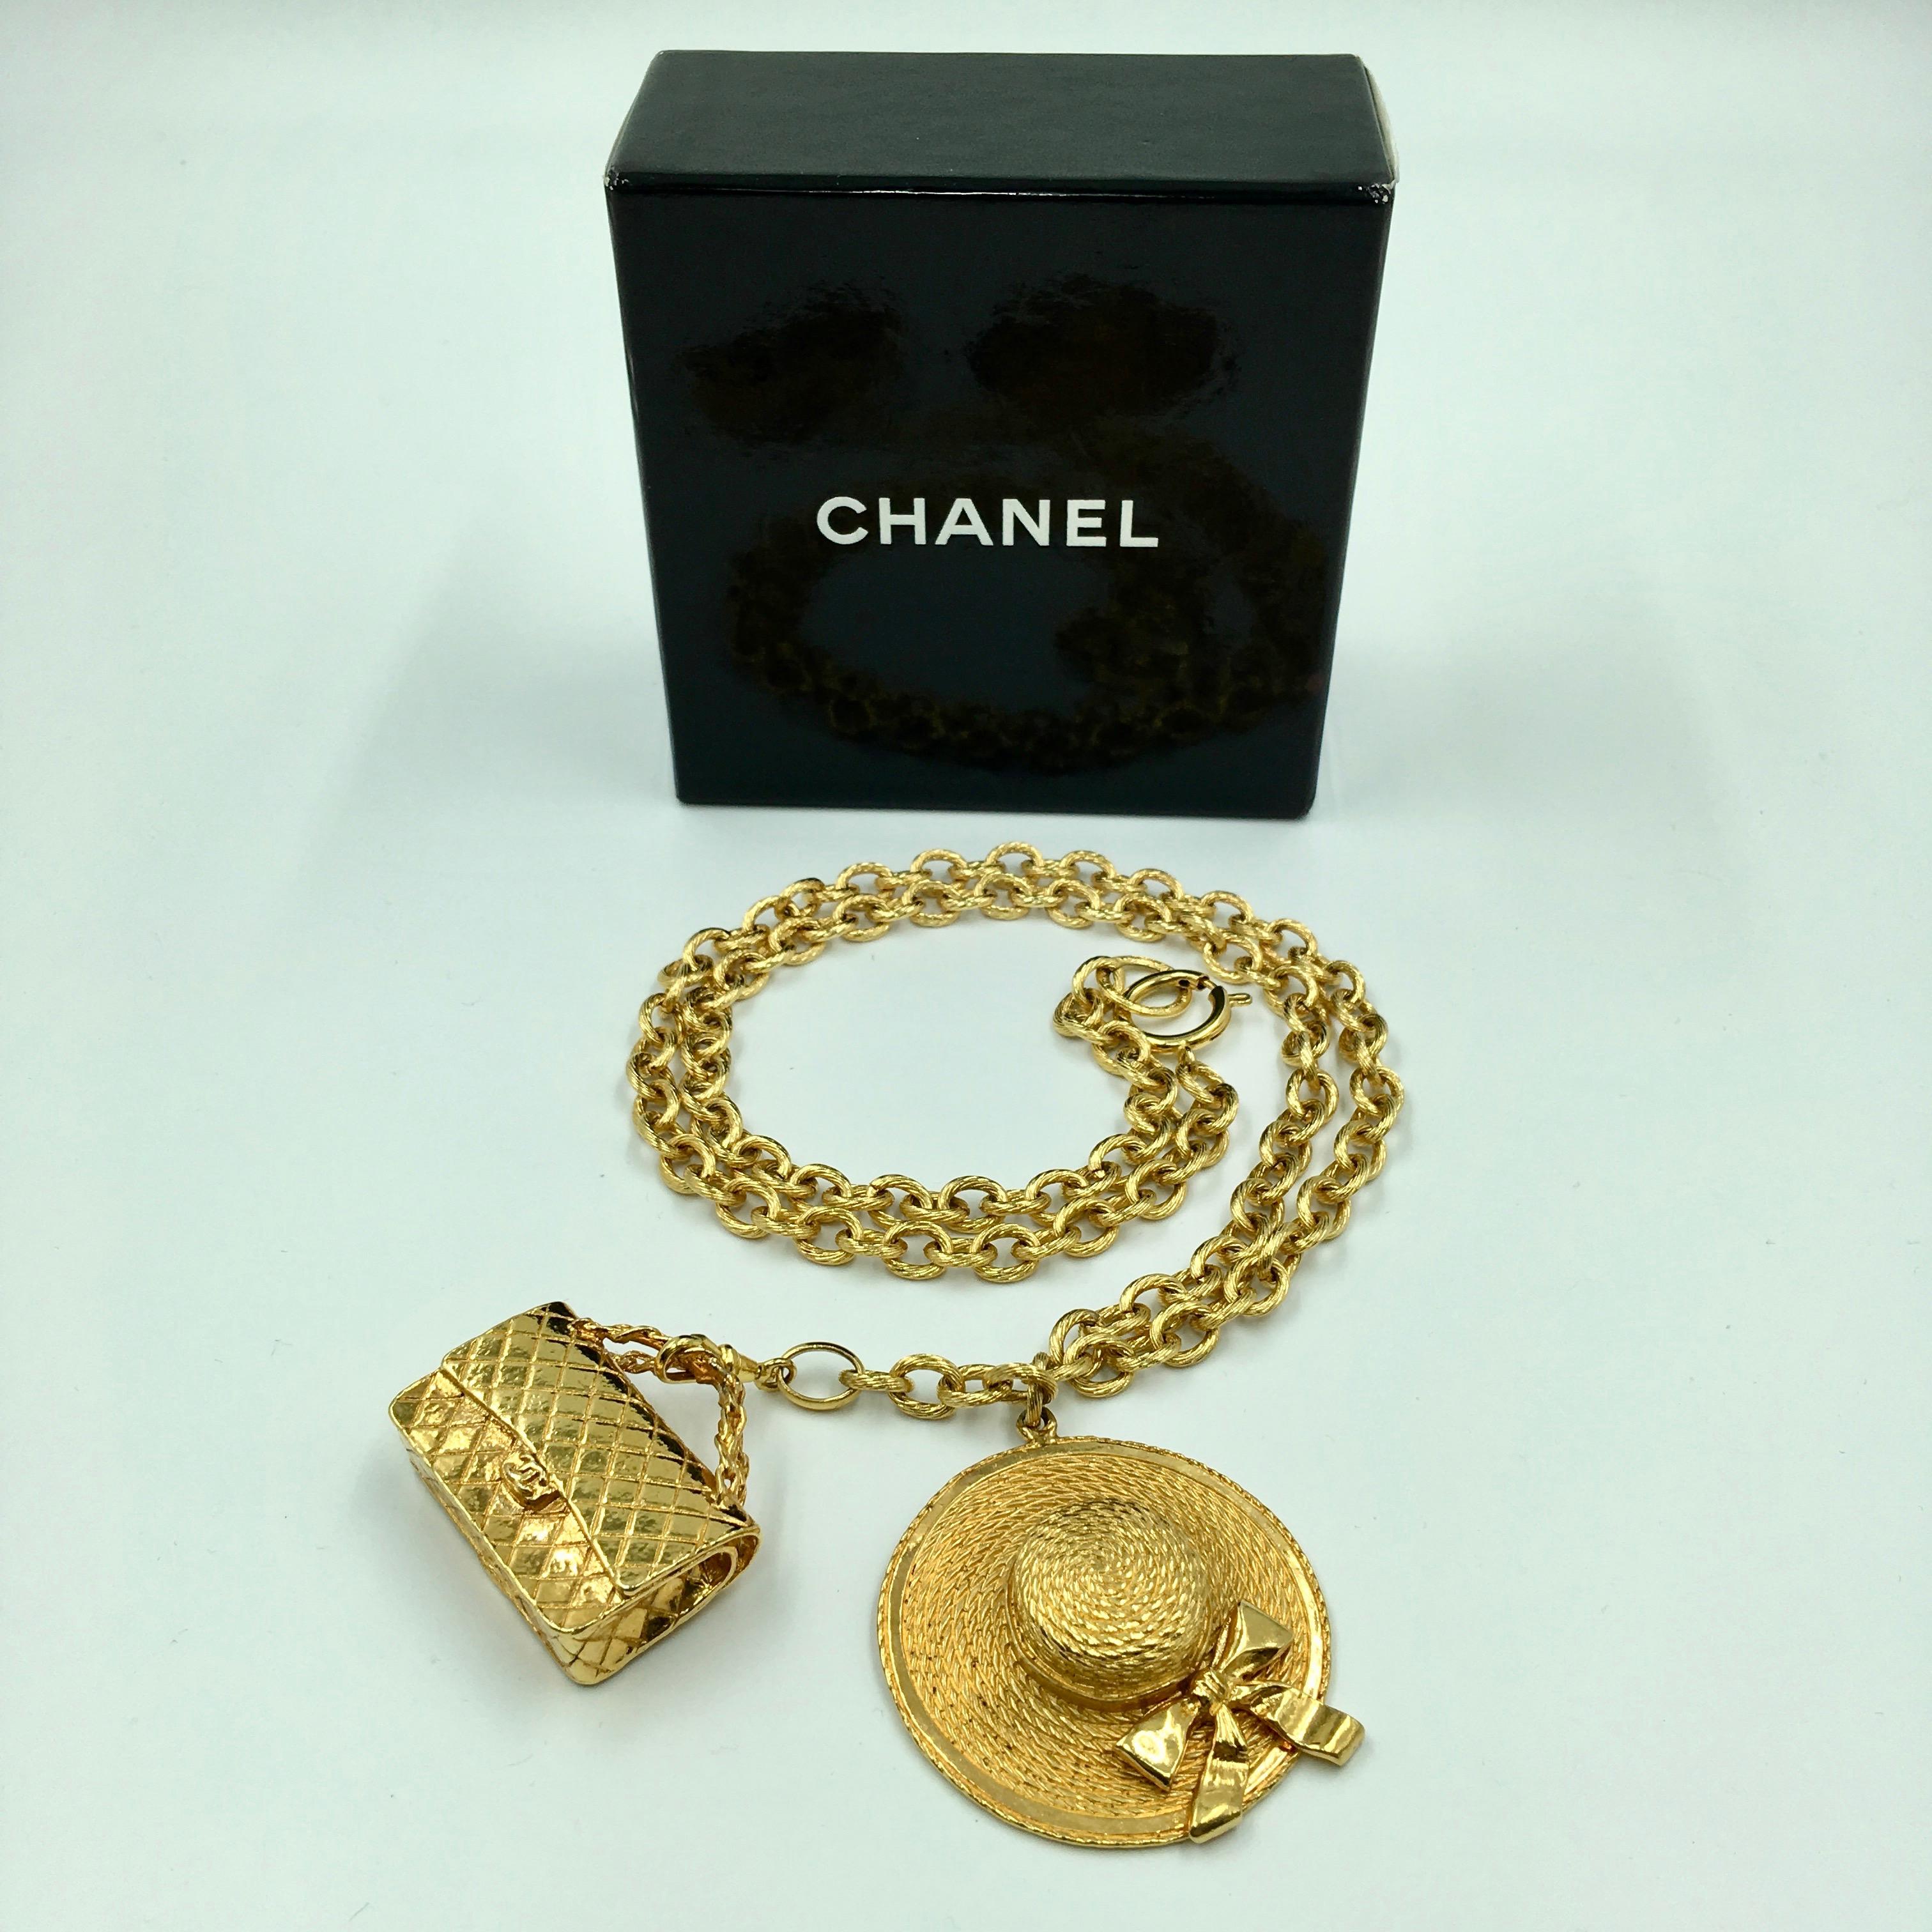 Collier à breloques Coco Chanel Classic Chapeau et sac à main matelassé en métal doré. Estampillé Chanel et Made In France. Pas d'éraflures, d'entailles, de décoloration.
Très bon état vintage. 

Les mesures sont les suivantes :

Chaîne du collier,